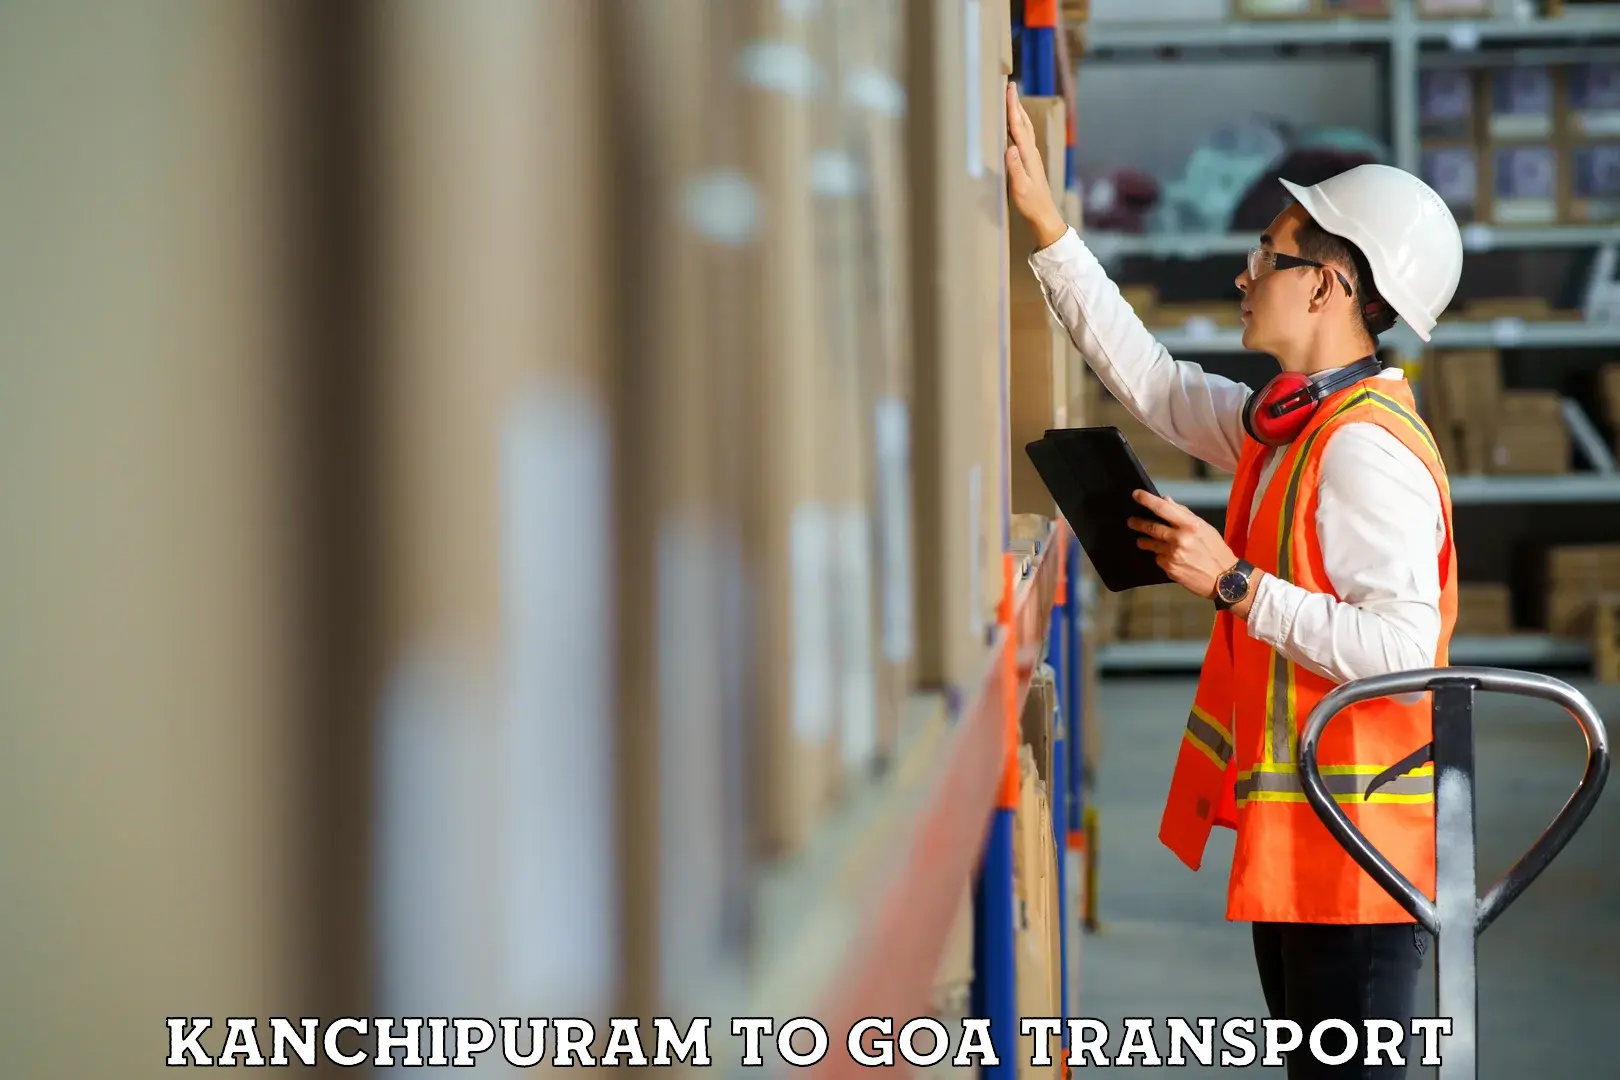 Online transport service Kanchipuram to South Goa